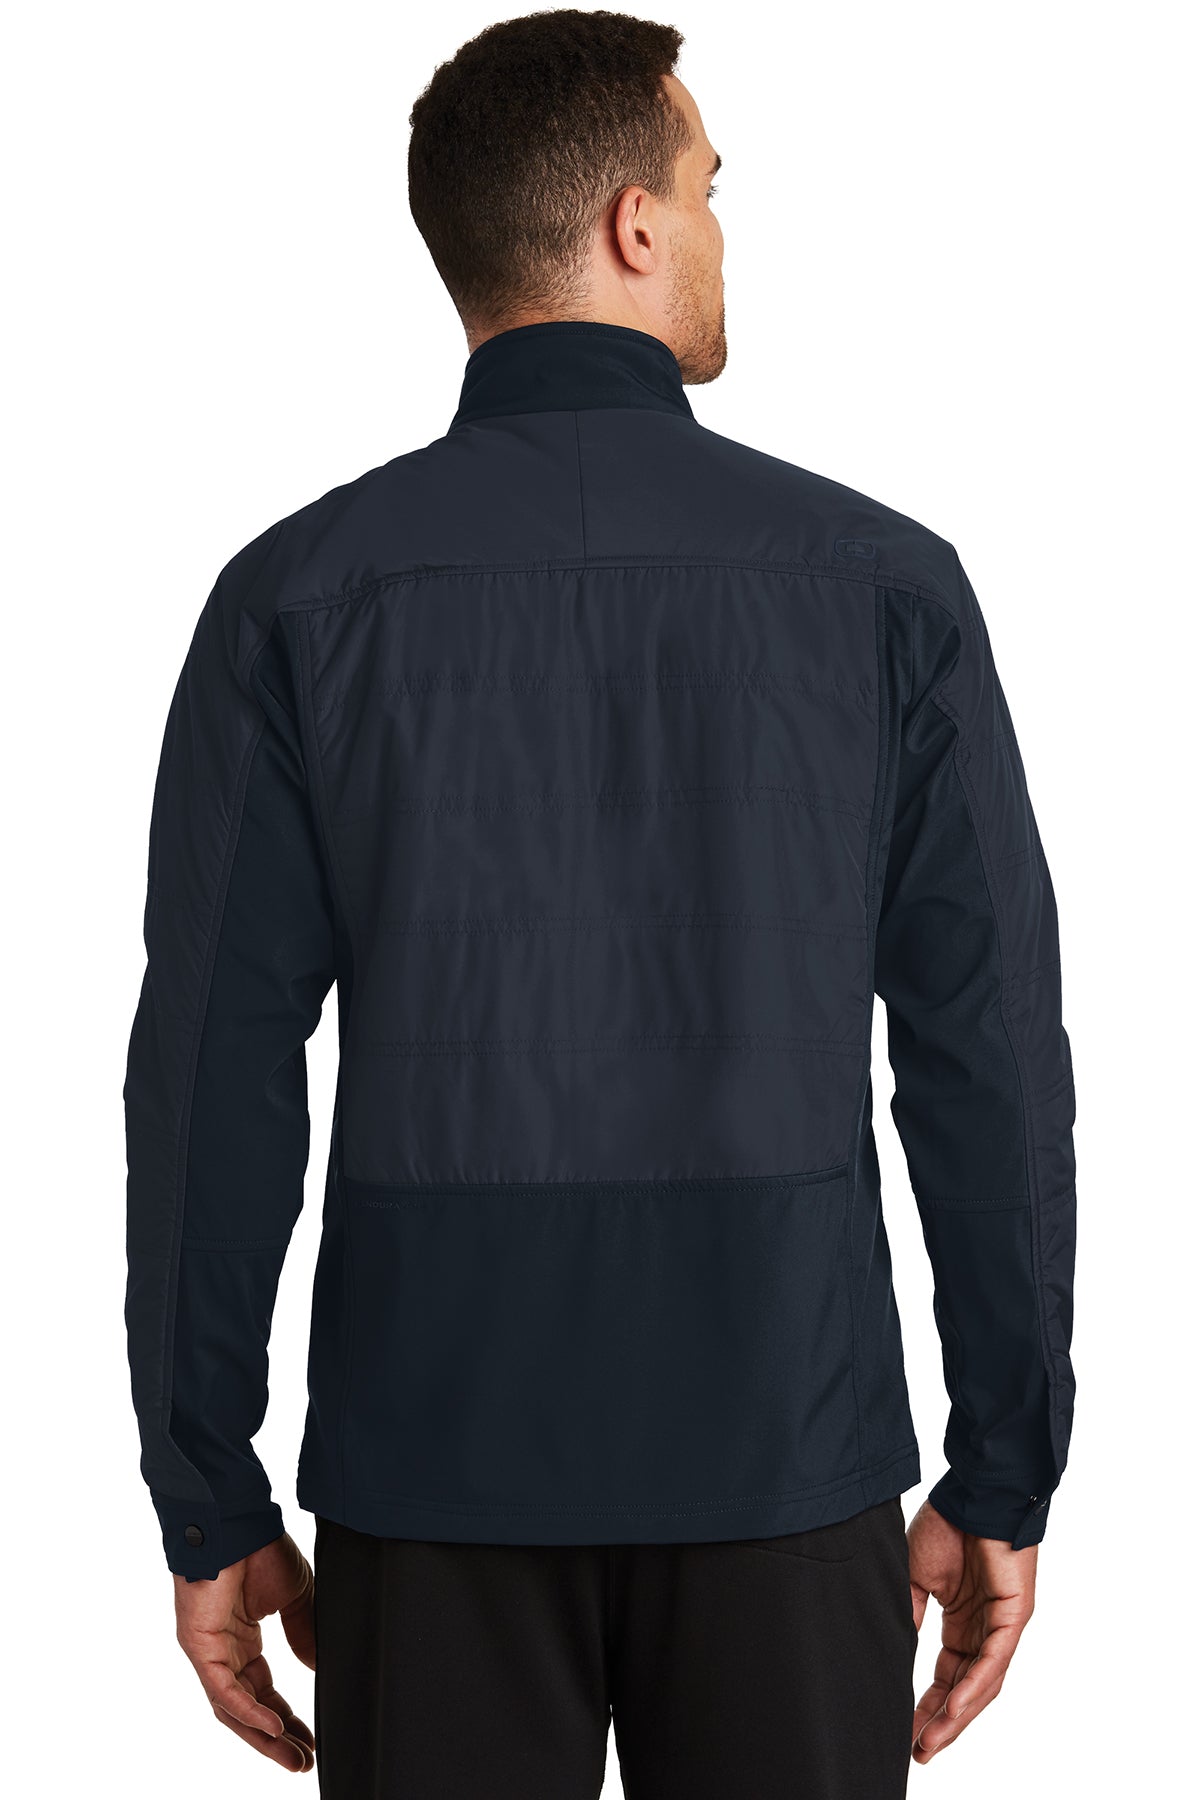 ogio endurance_oe722 _propel navy_company_logo_jackets